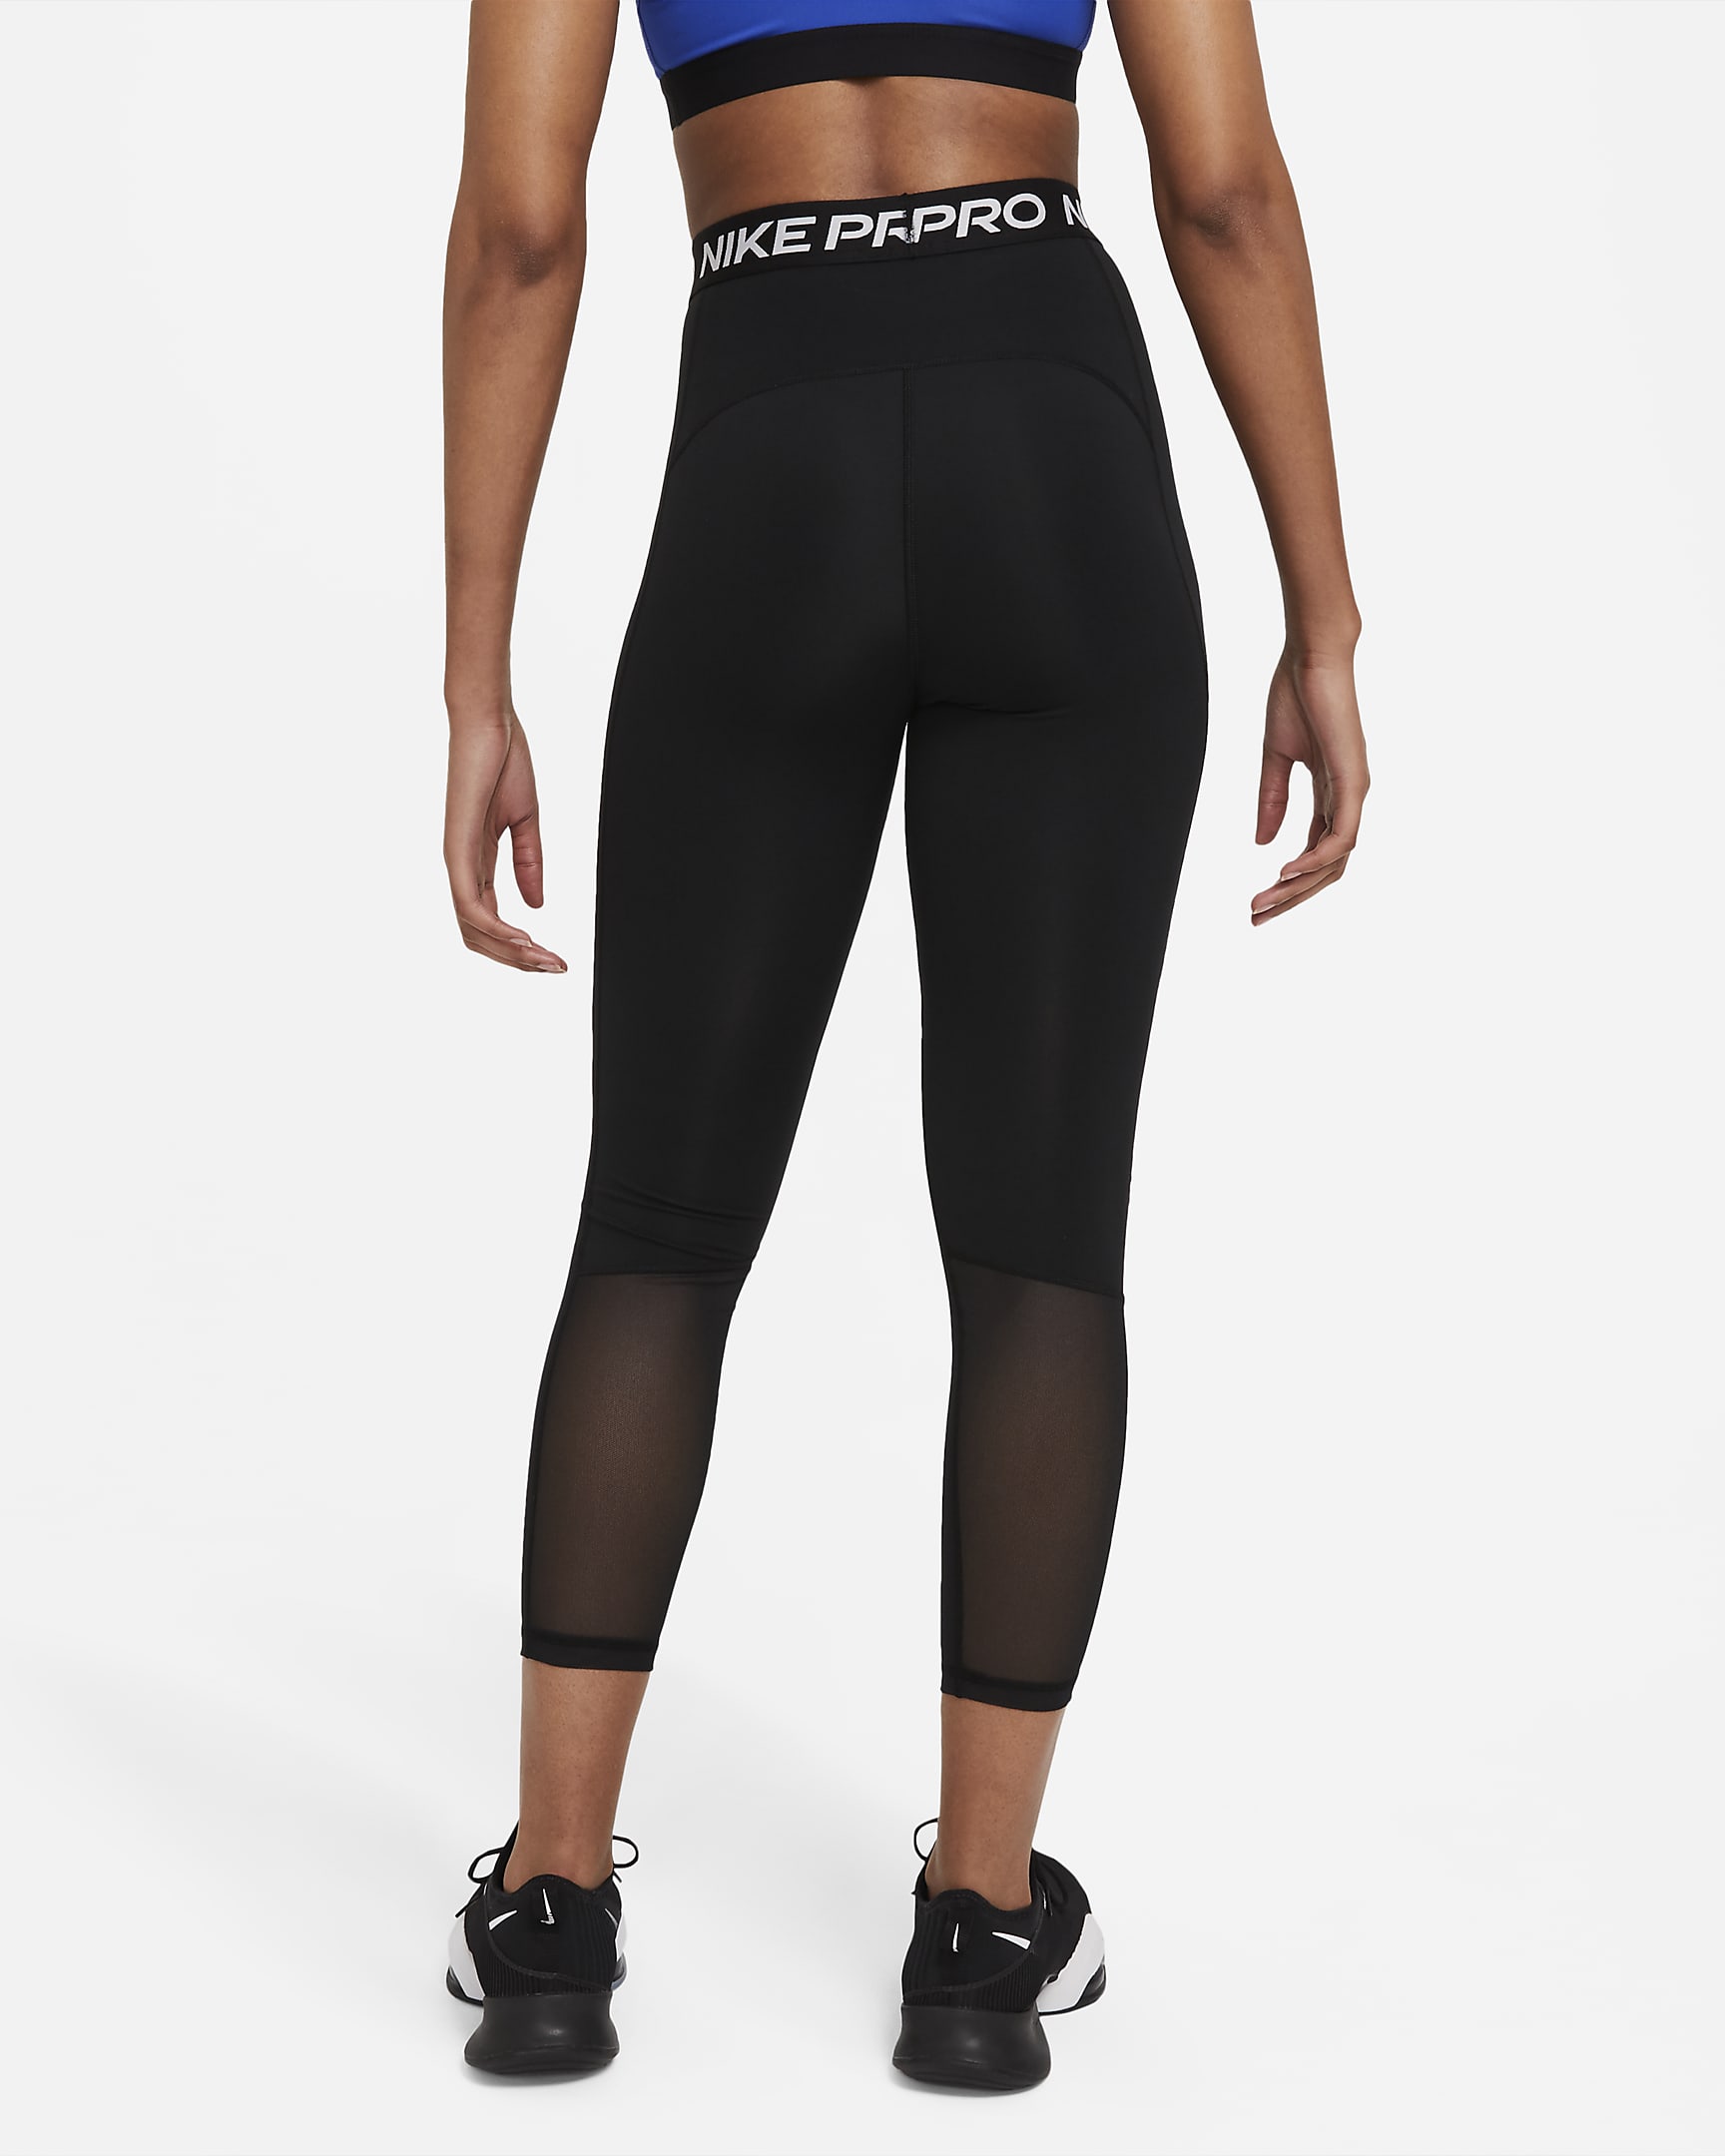 Legging 7/8 taille haute à empiècements en mesh Nike Pro 365 pour Femme - Noir/Blanc